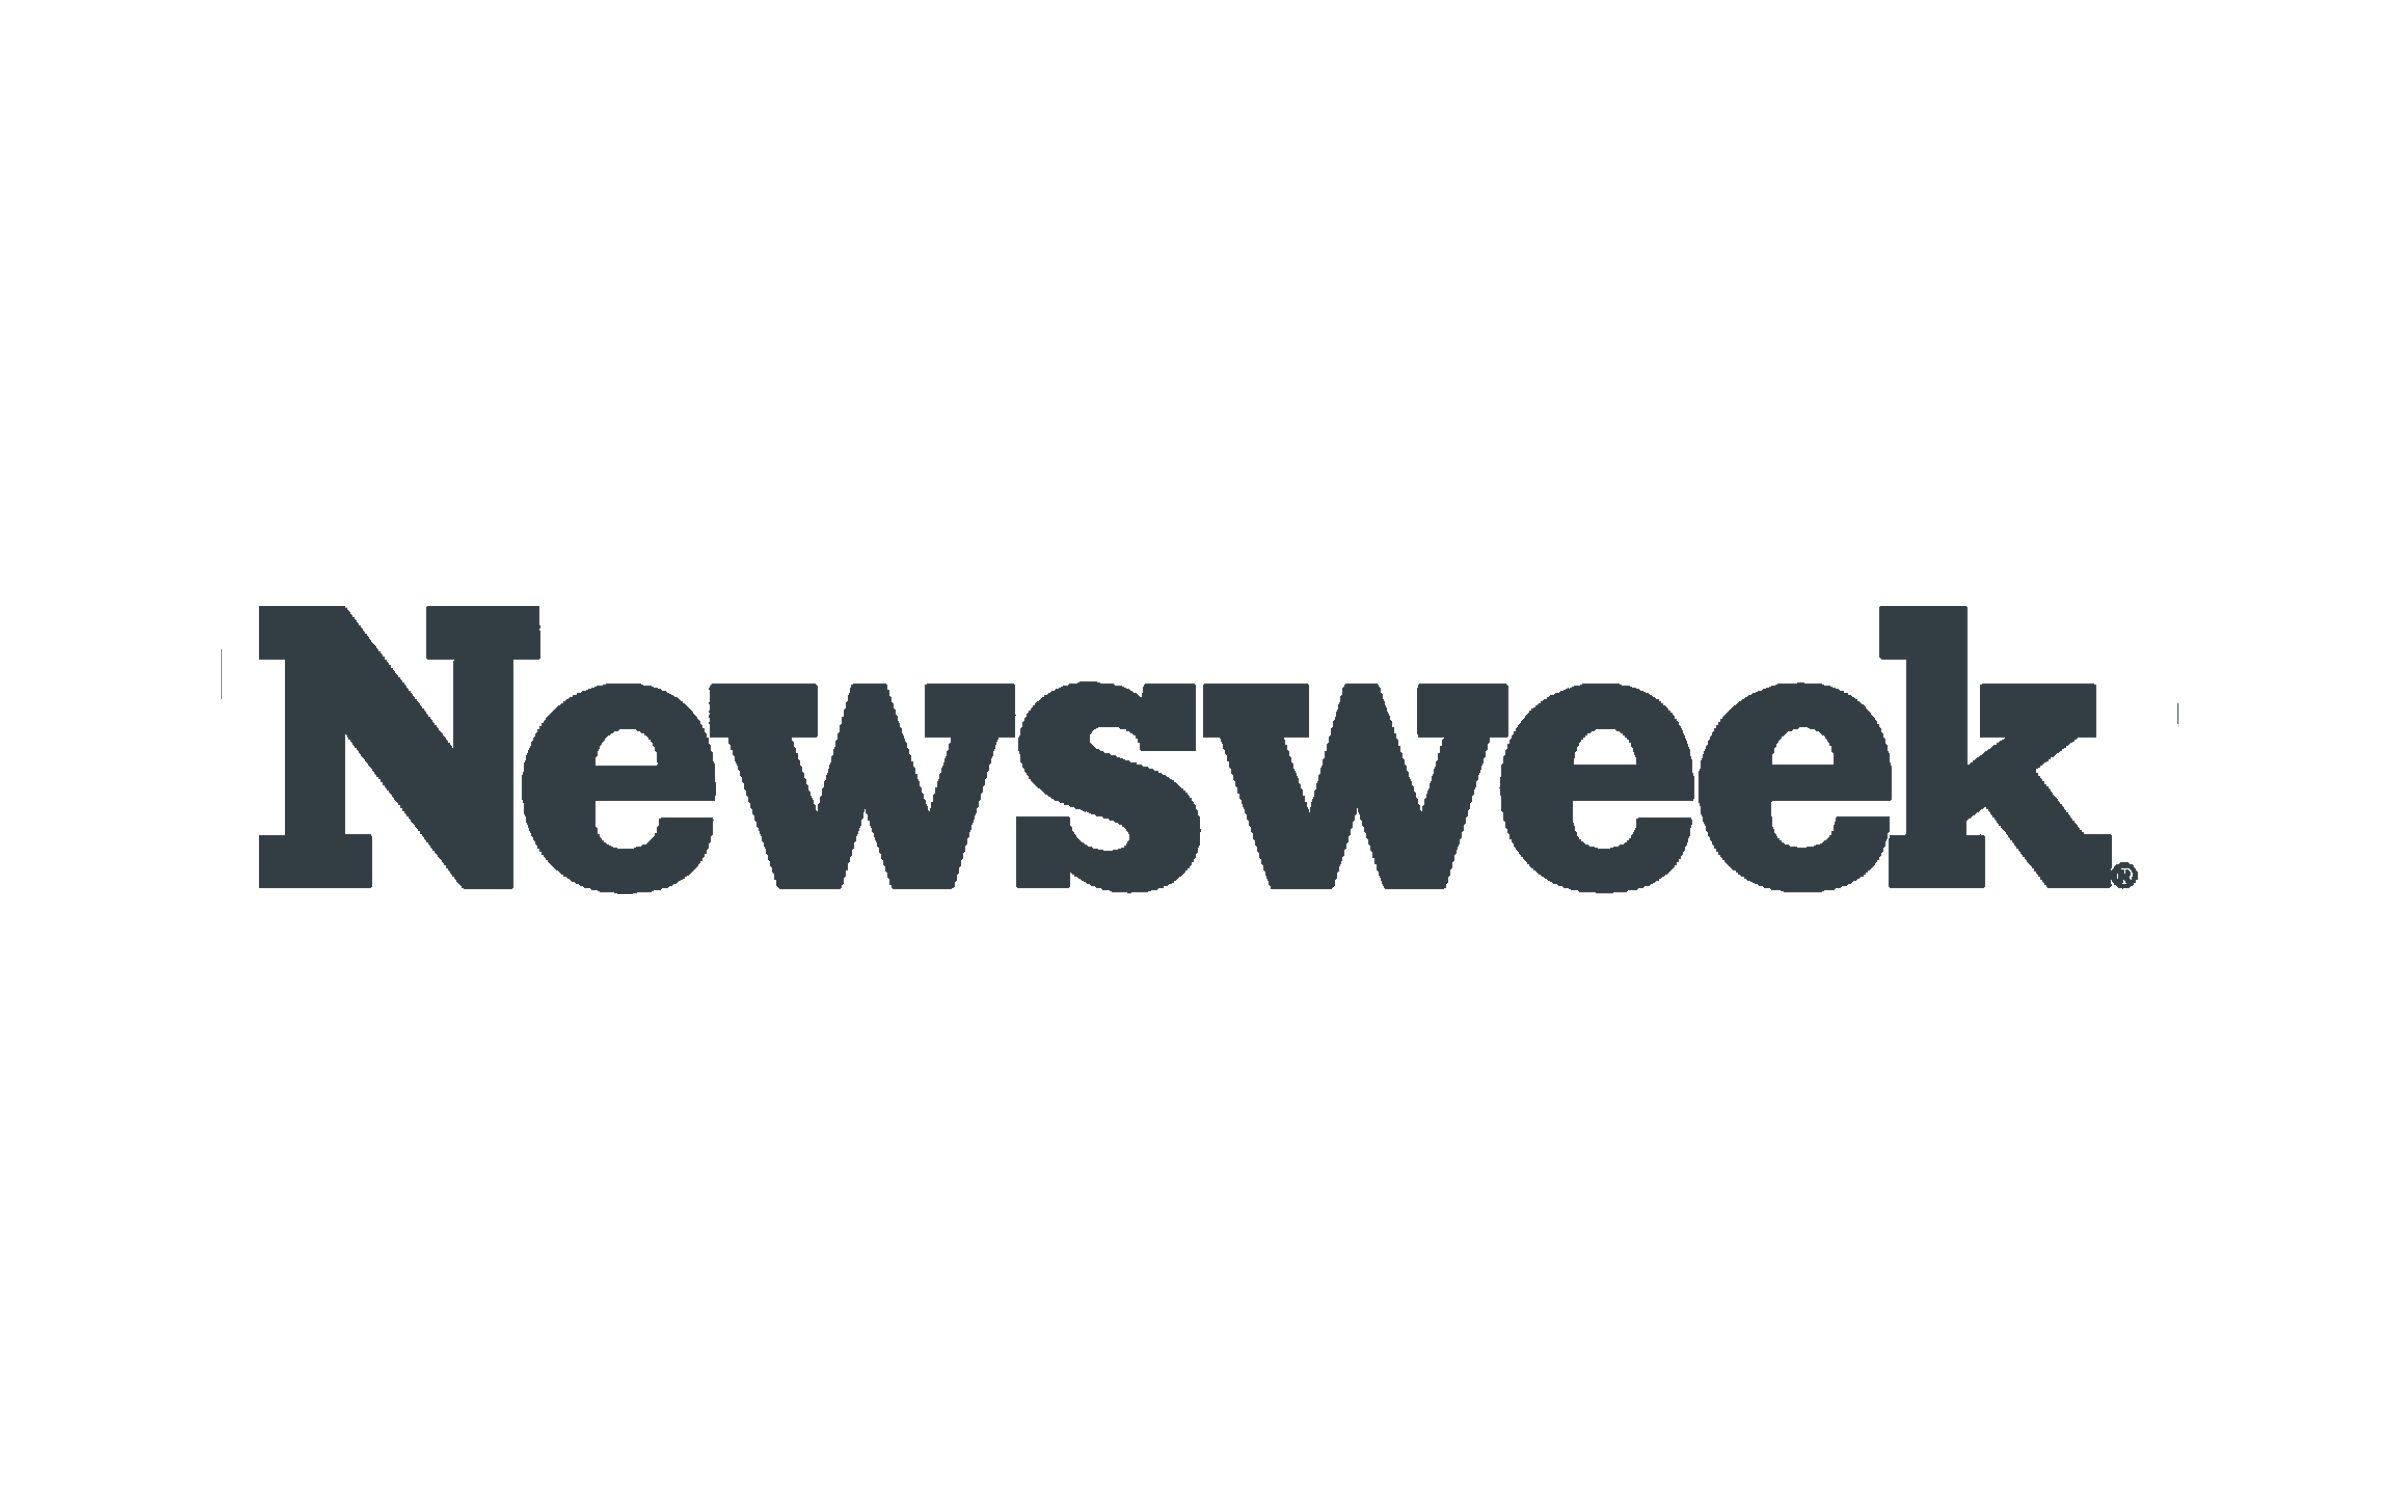 Newsweek's logo